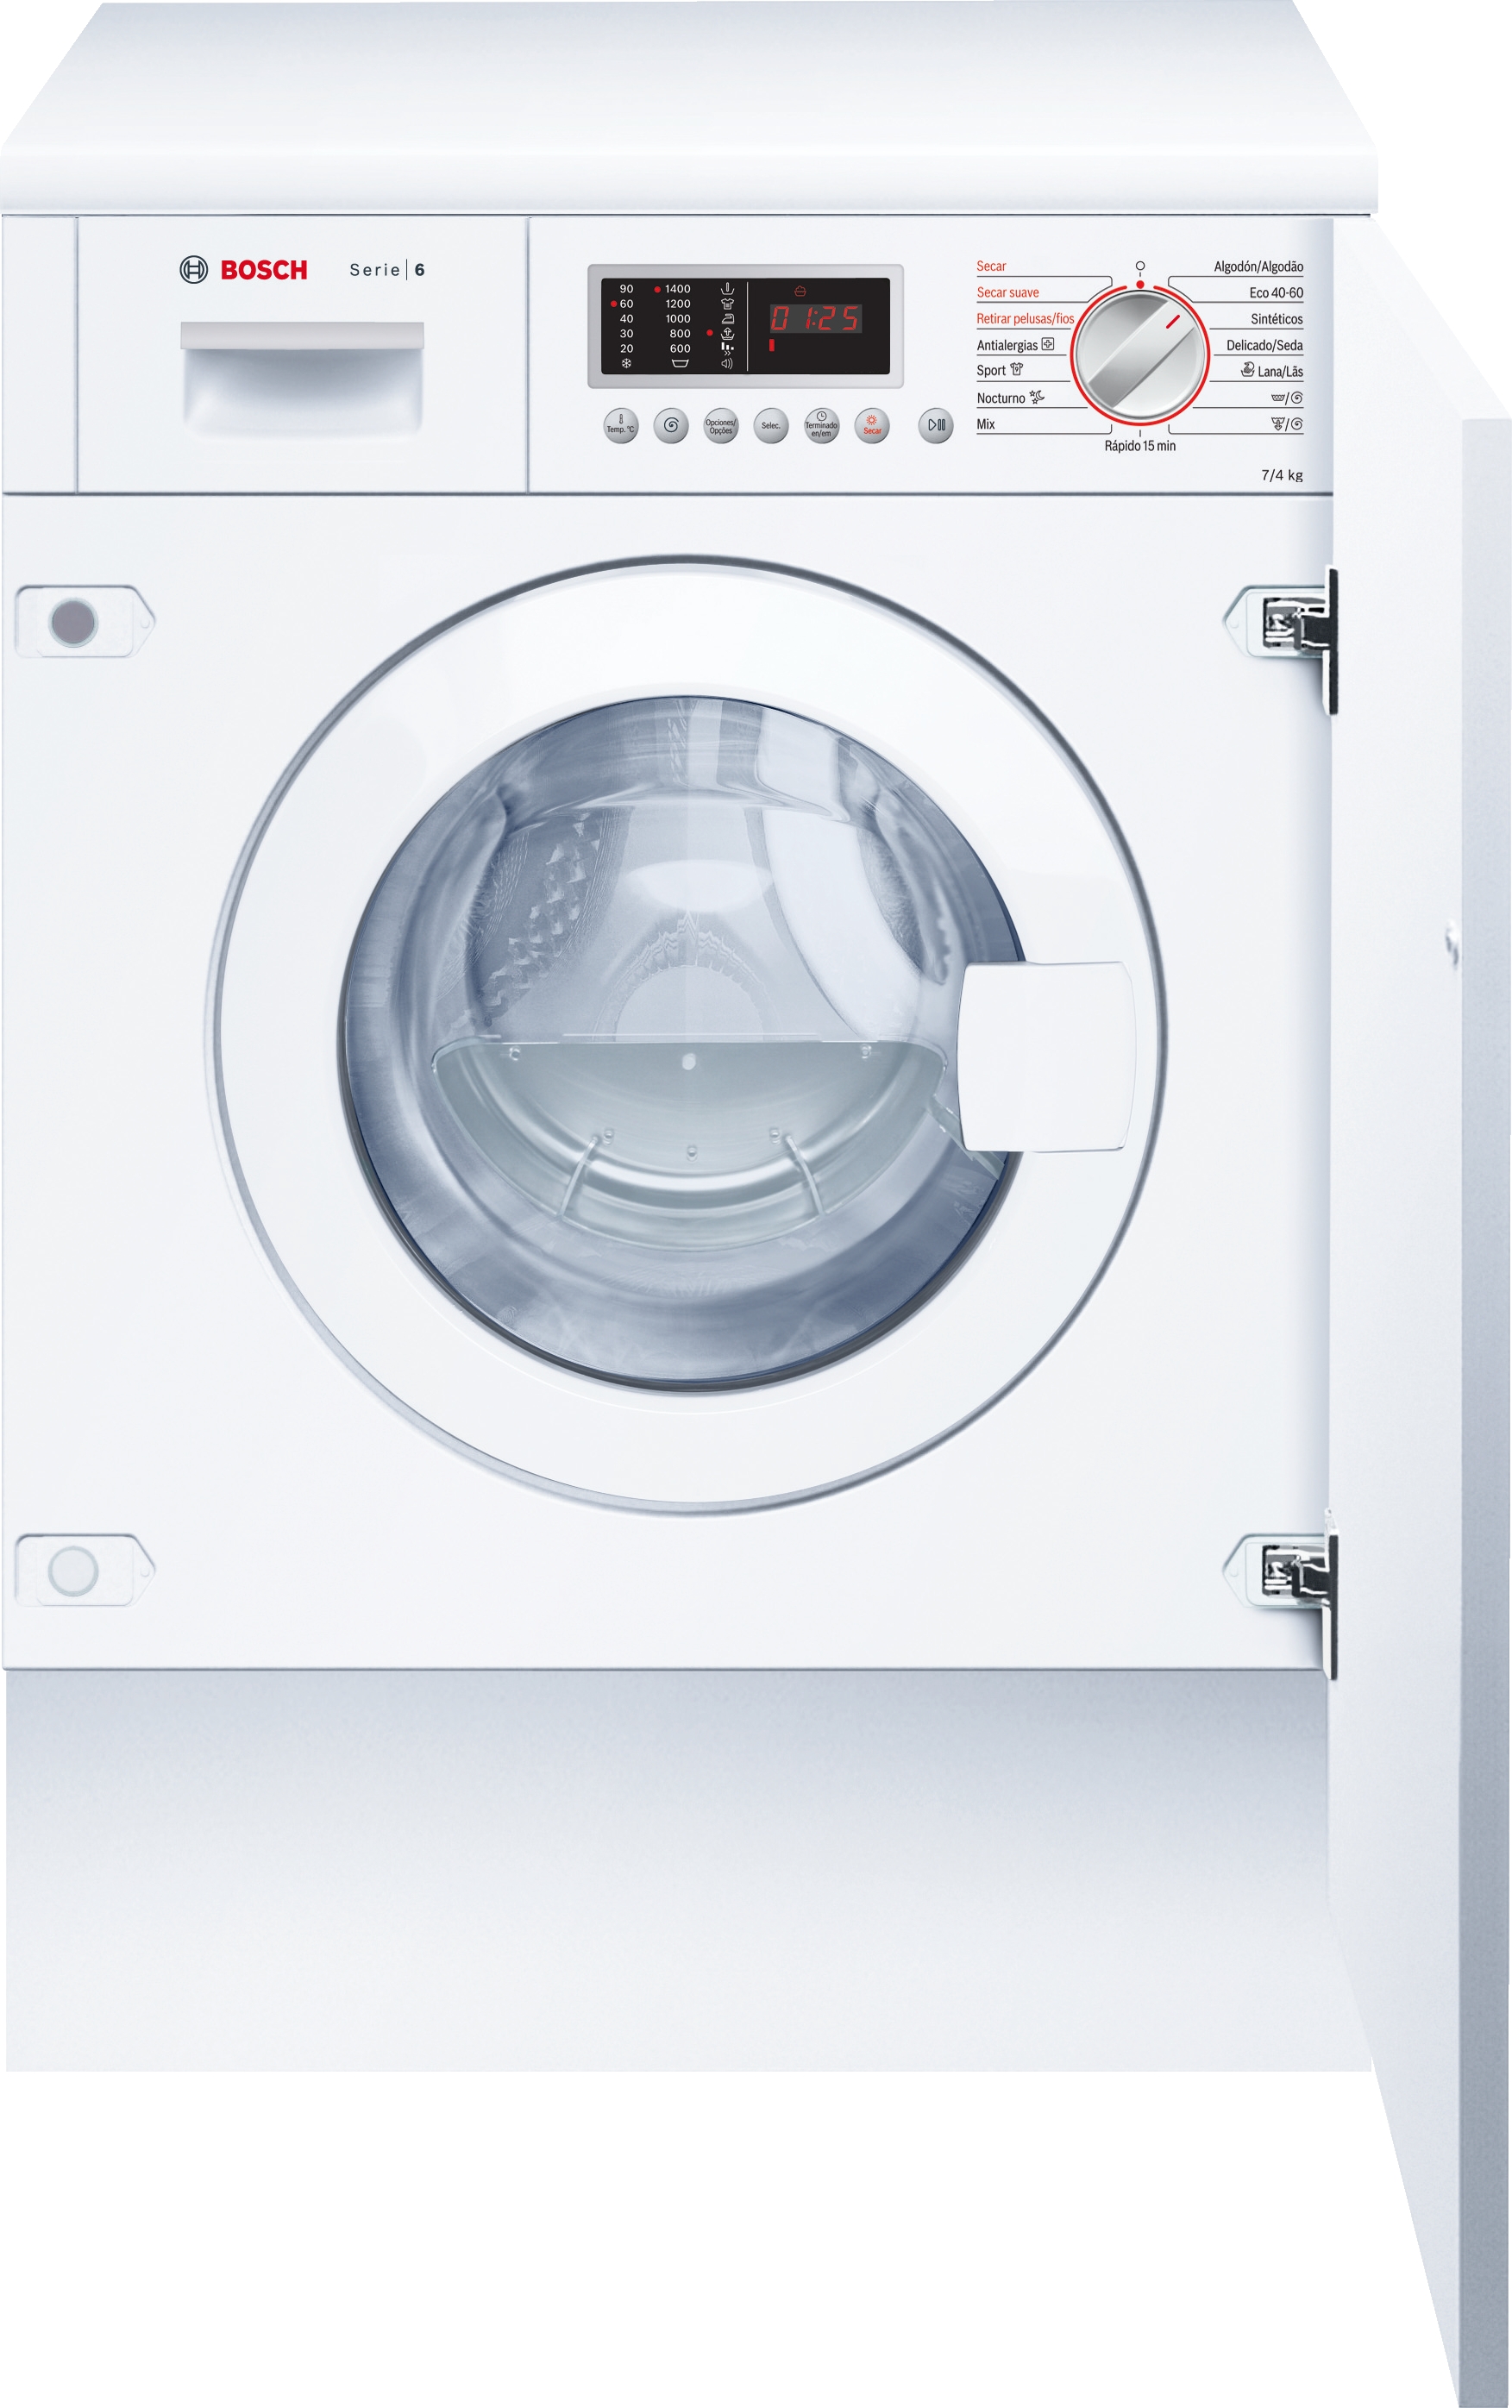 Bosch Serie 6 lavadora-secadora Integrado Carga Blanco